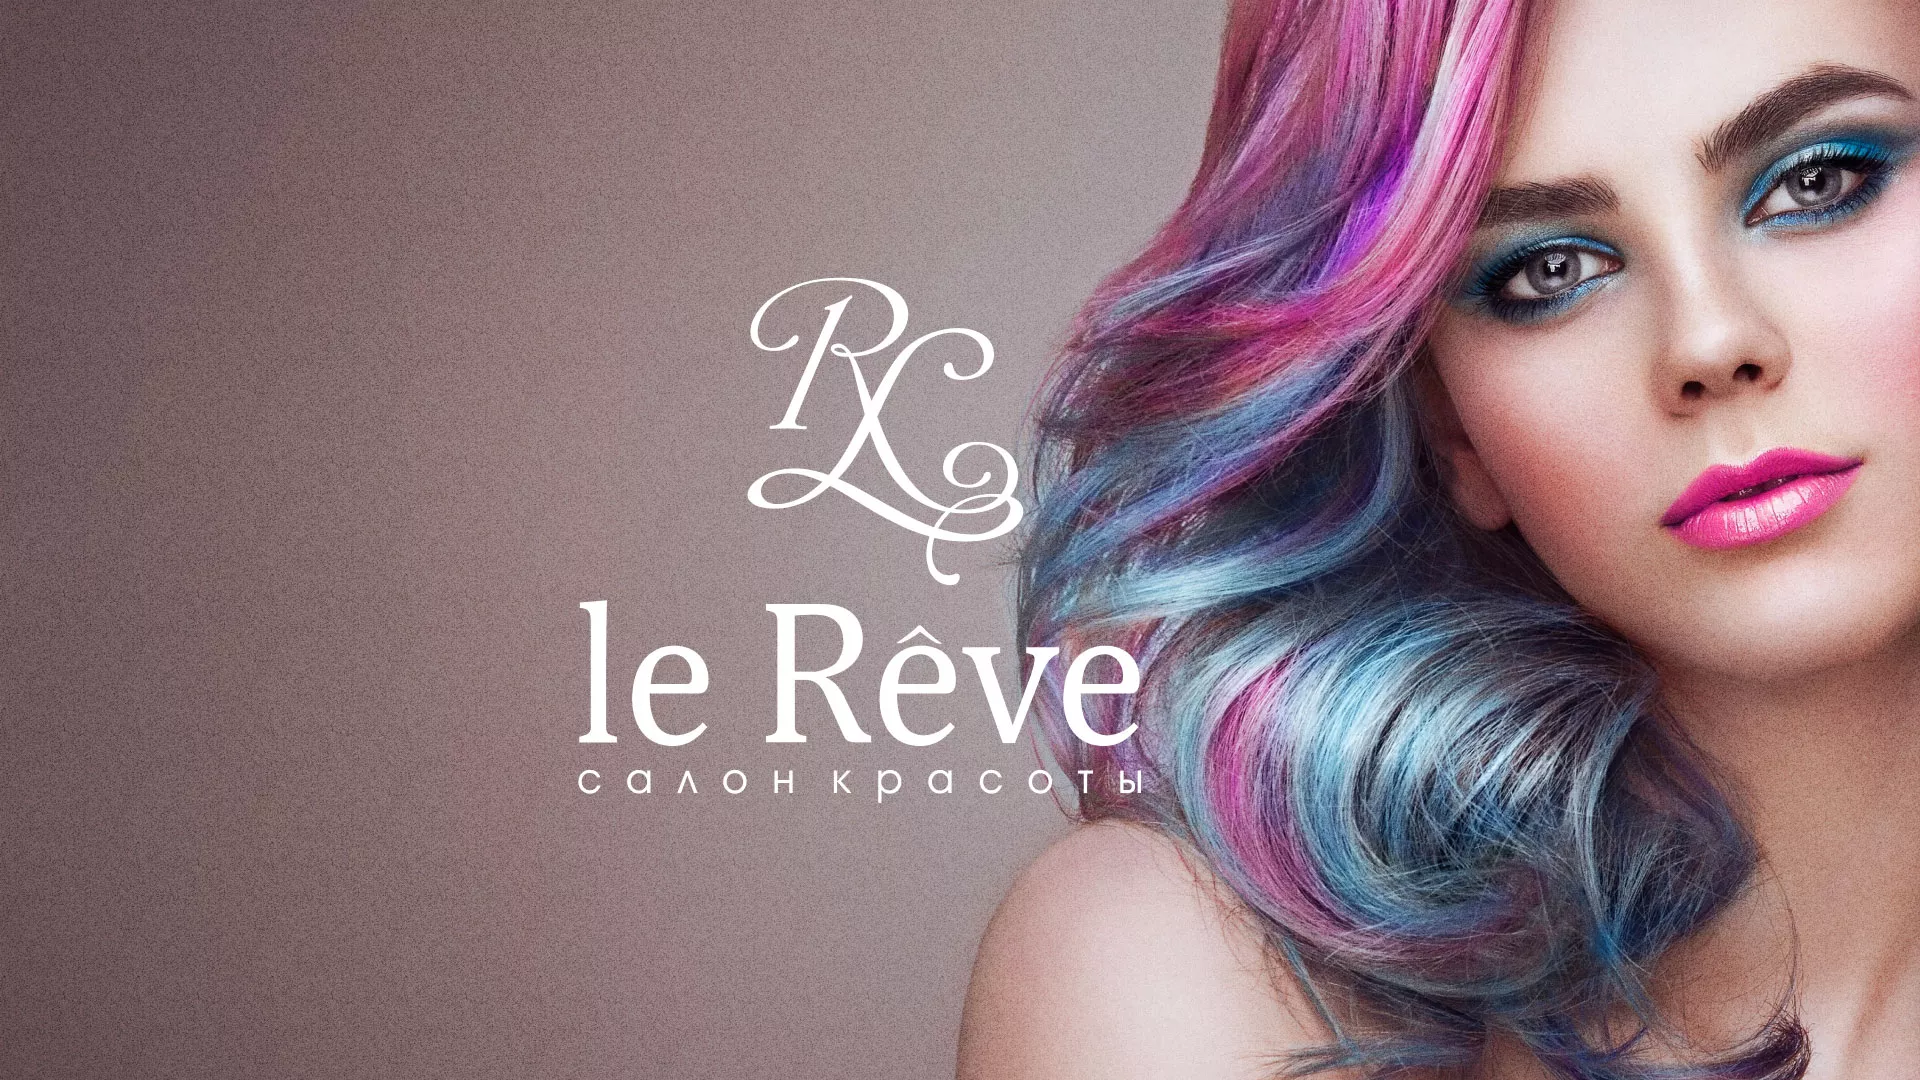 Создание сайта для салона красоты «Le Reve» в Чебоксарах